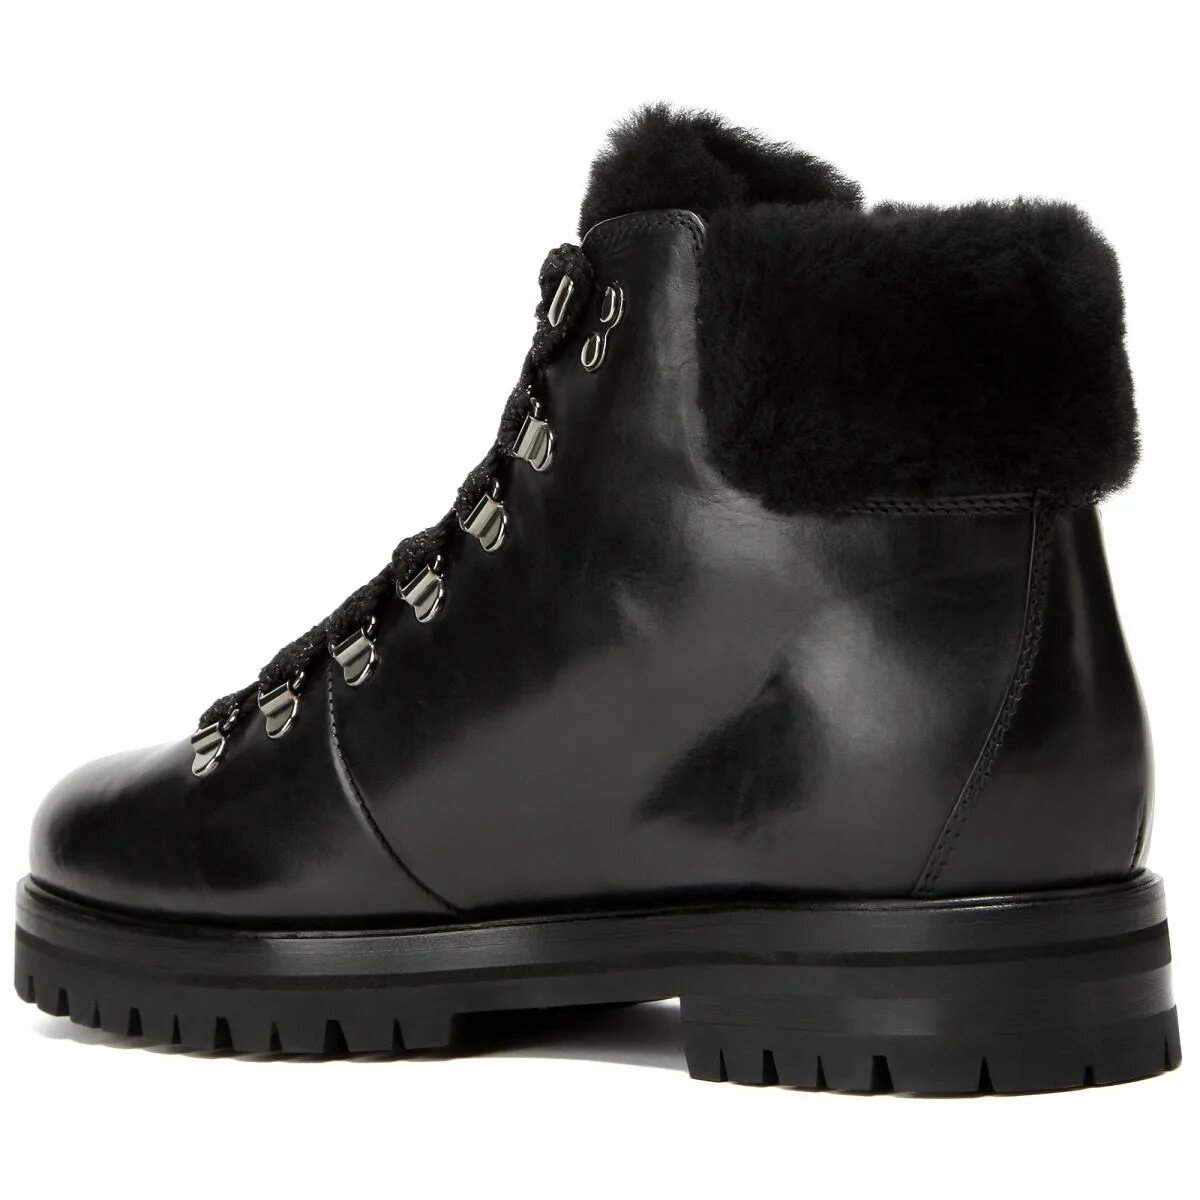 AGL ботинки Alaska. AGL ботинки Fergus Opium. AGL зимние ботинки женские 717536. Attilio Giusti Leombruni обувь. Agl обувь купить